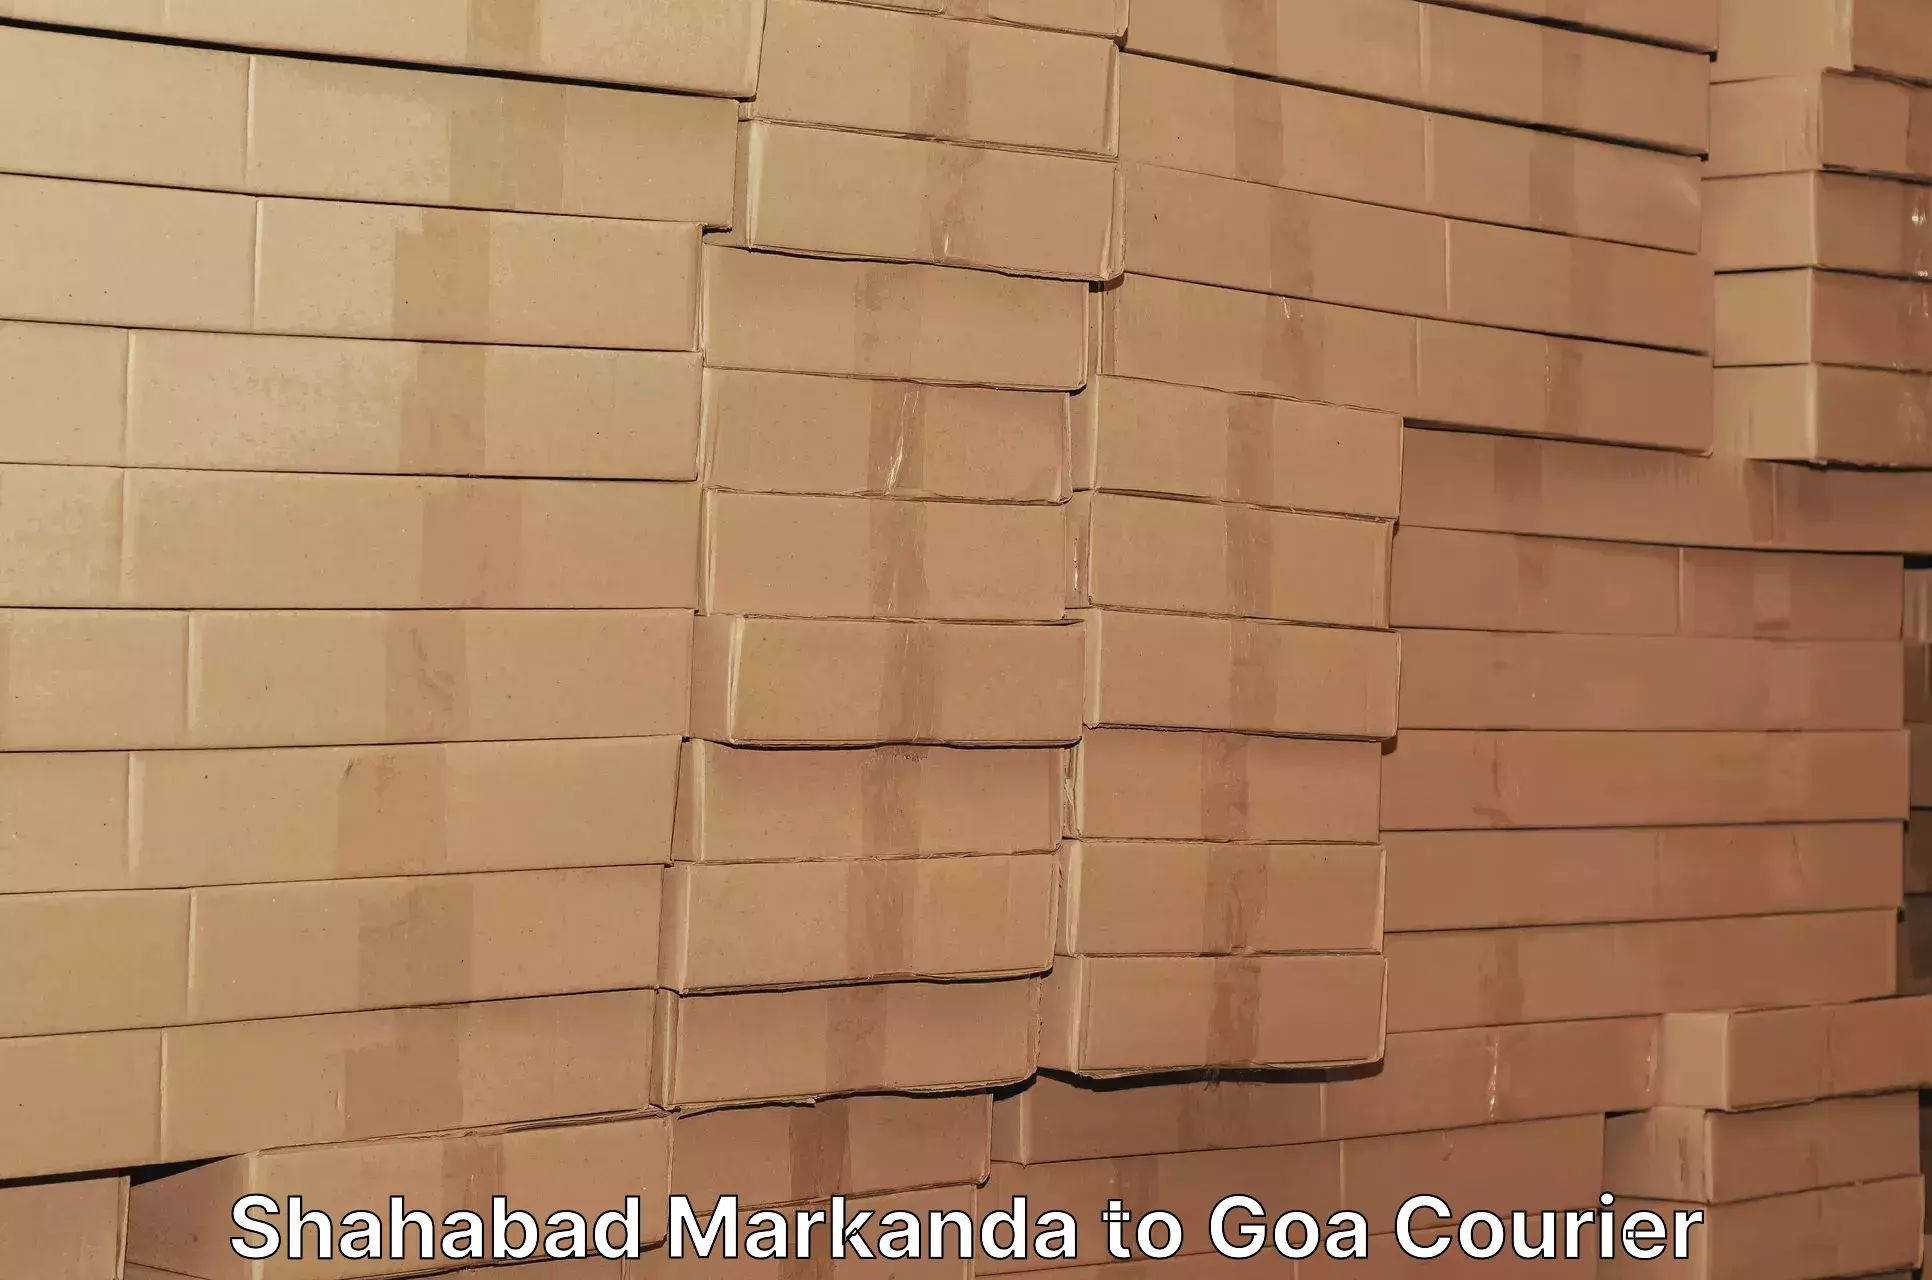 Personalized courier experiences Shahabad Markanda to Goa